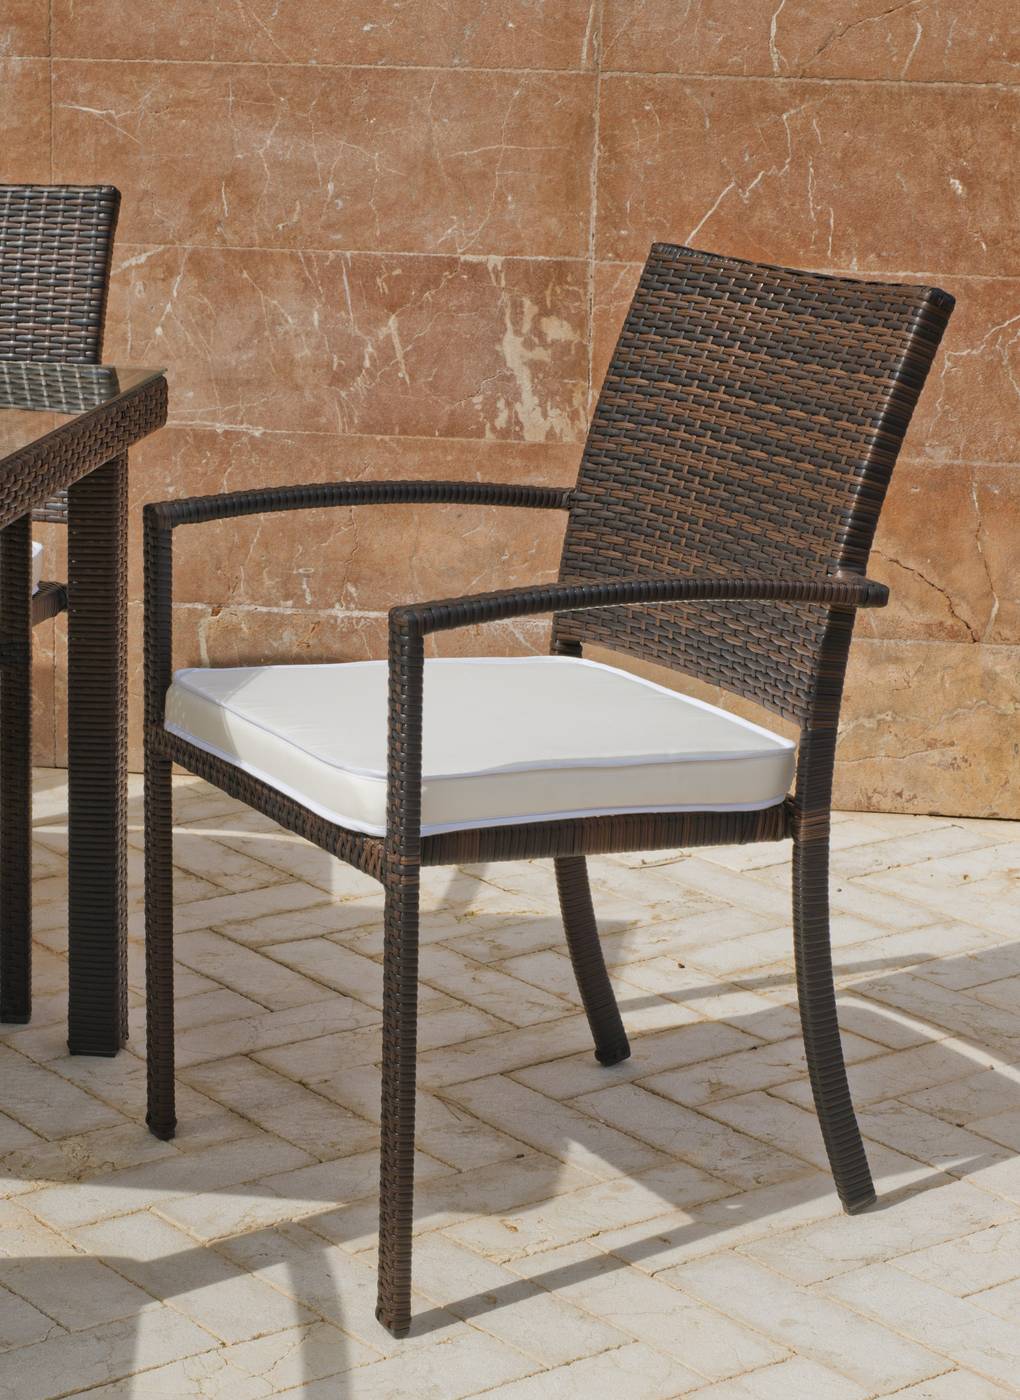 Conjunto Mosaico Laredo150-Bahia - Conjunto de forja color marrón: mesa con tablero mosaico ovalado de 150 cm + 4 sillones de ratán con cojines.